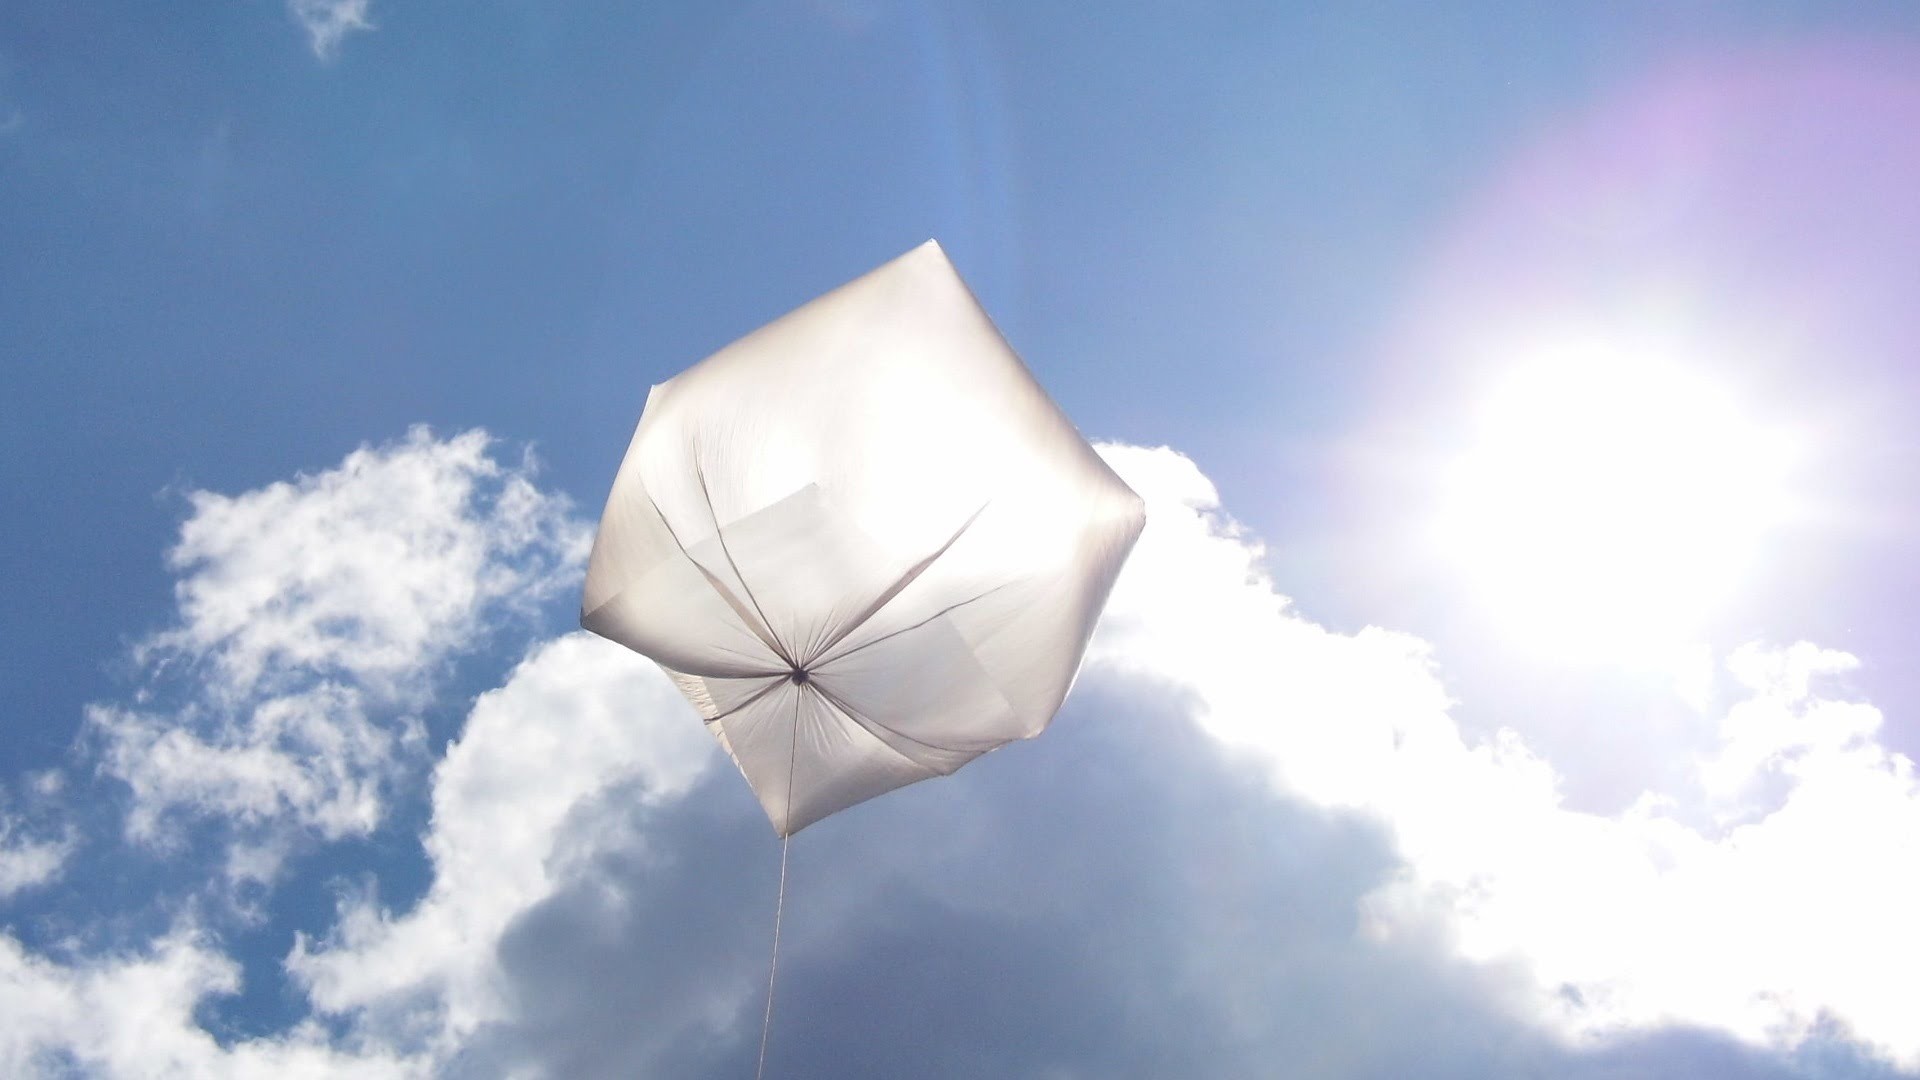 Solarballon "Sonnenwürfel" von Hot Air Craft (solar balloon Sun Cube), balao solar, ballon solaire